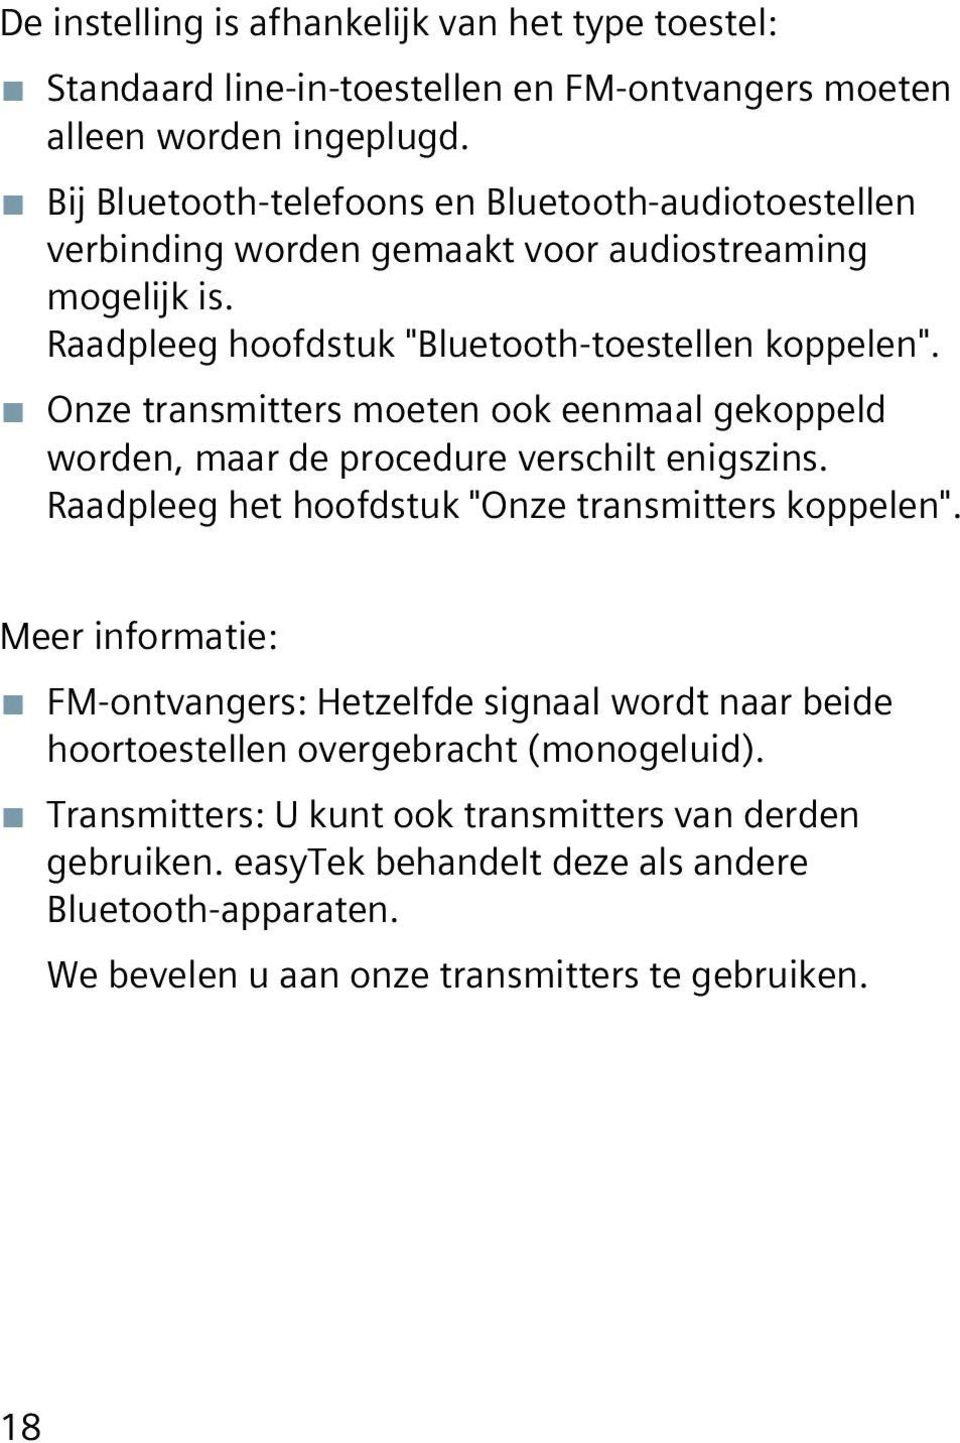 Onze transmitters moeten ook eenmaal gekoppeld worden, maar de procedure verschilt enigszins. Raadpleeg het hoofdstuk "Onze transmitters koppelen".